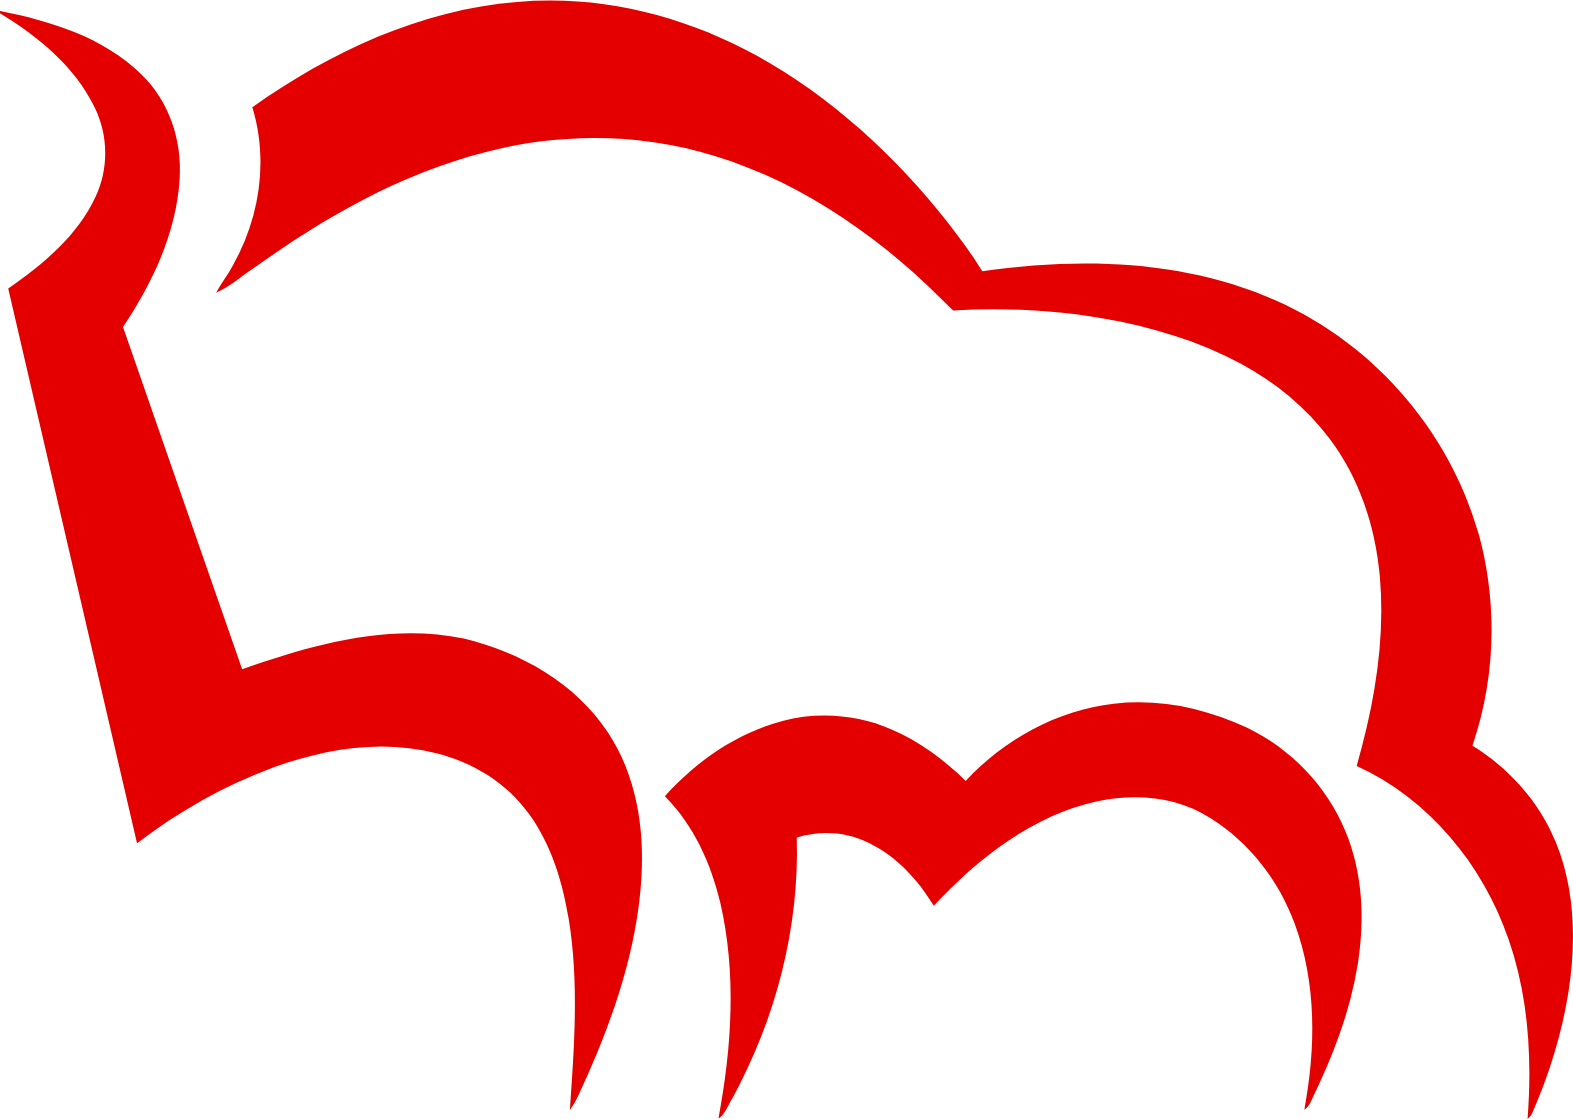 Bank Pekao (Bank Polska Kasa Opieki) logo (PNG transparent)